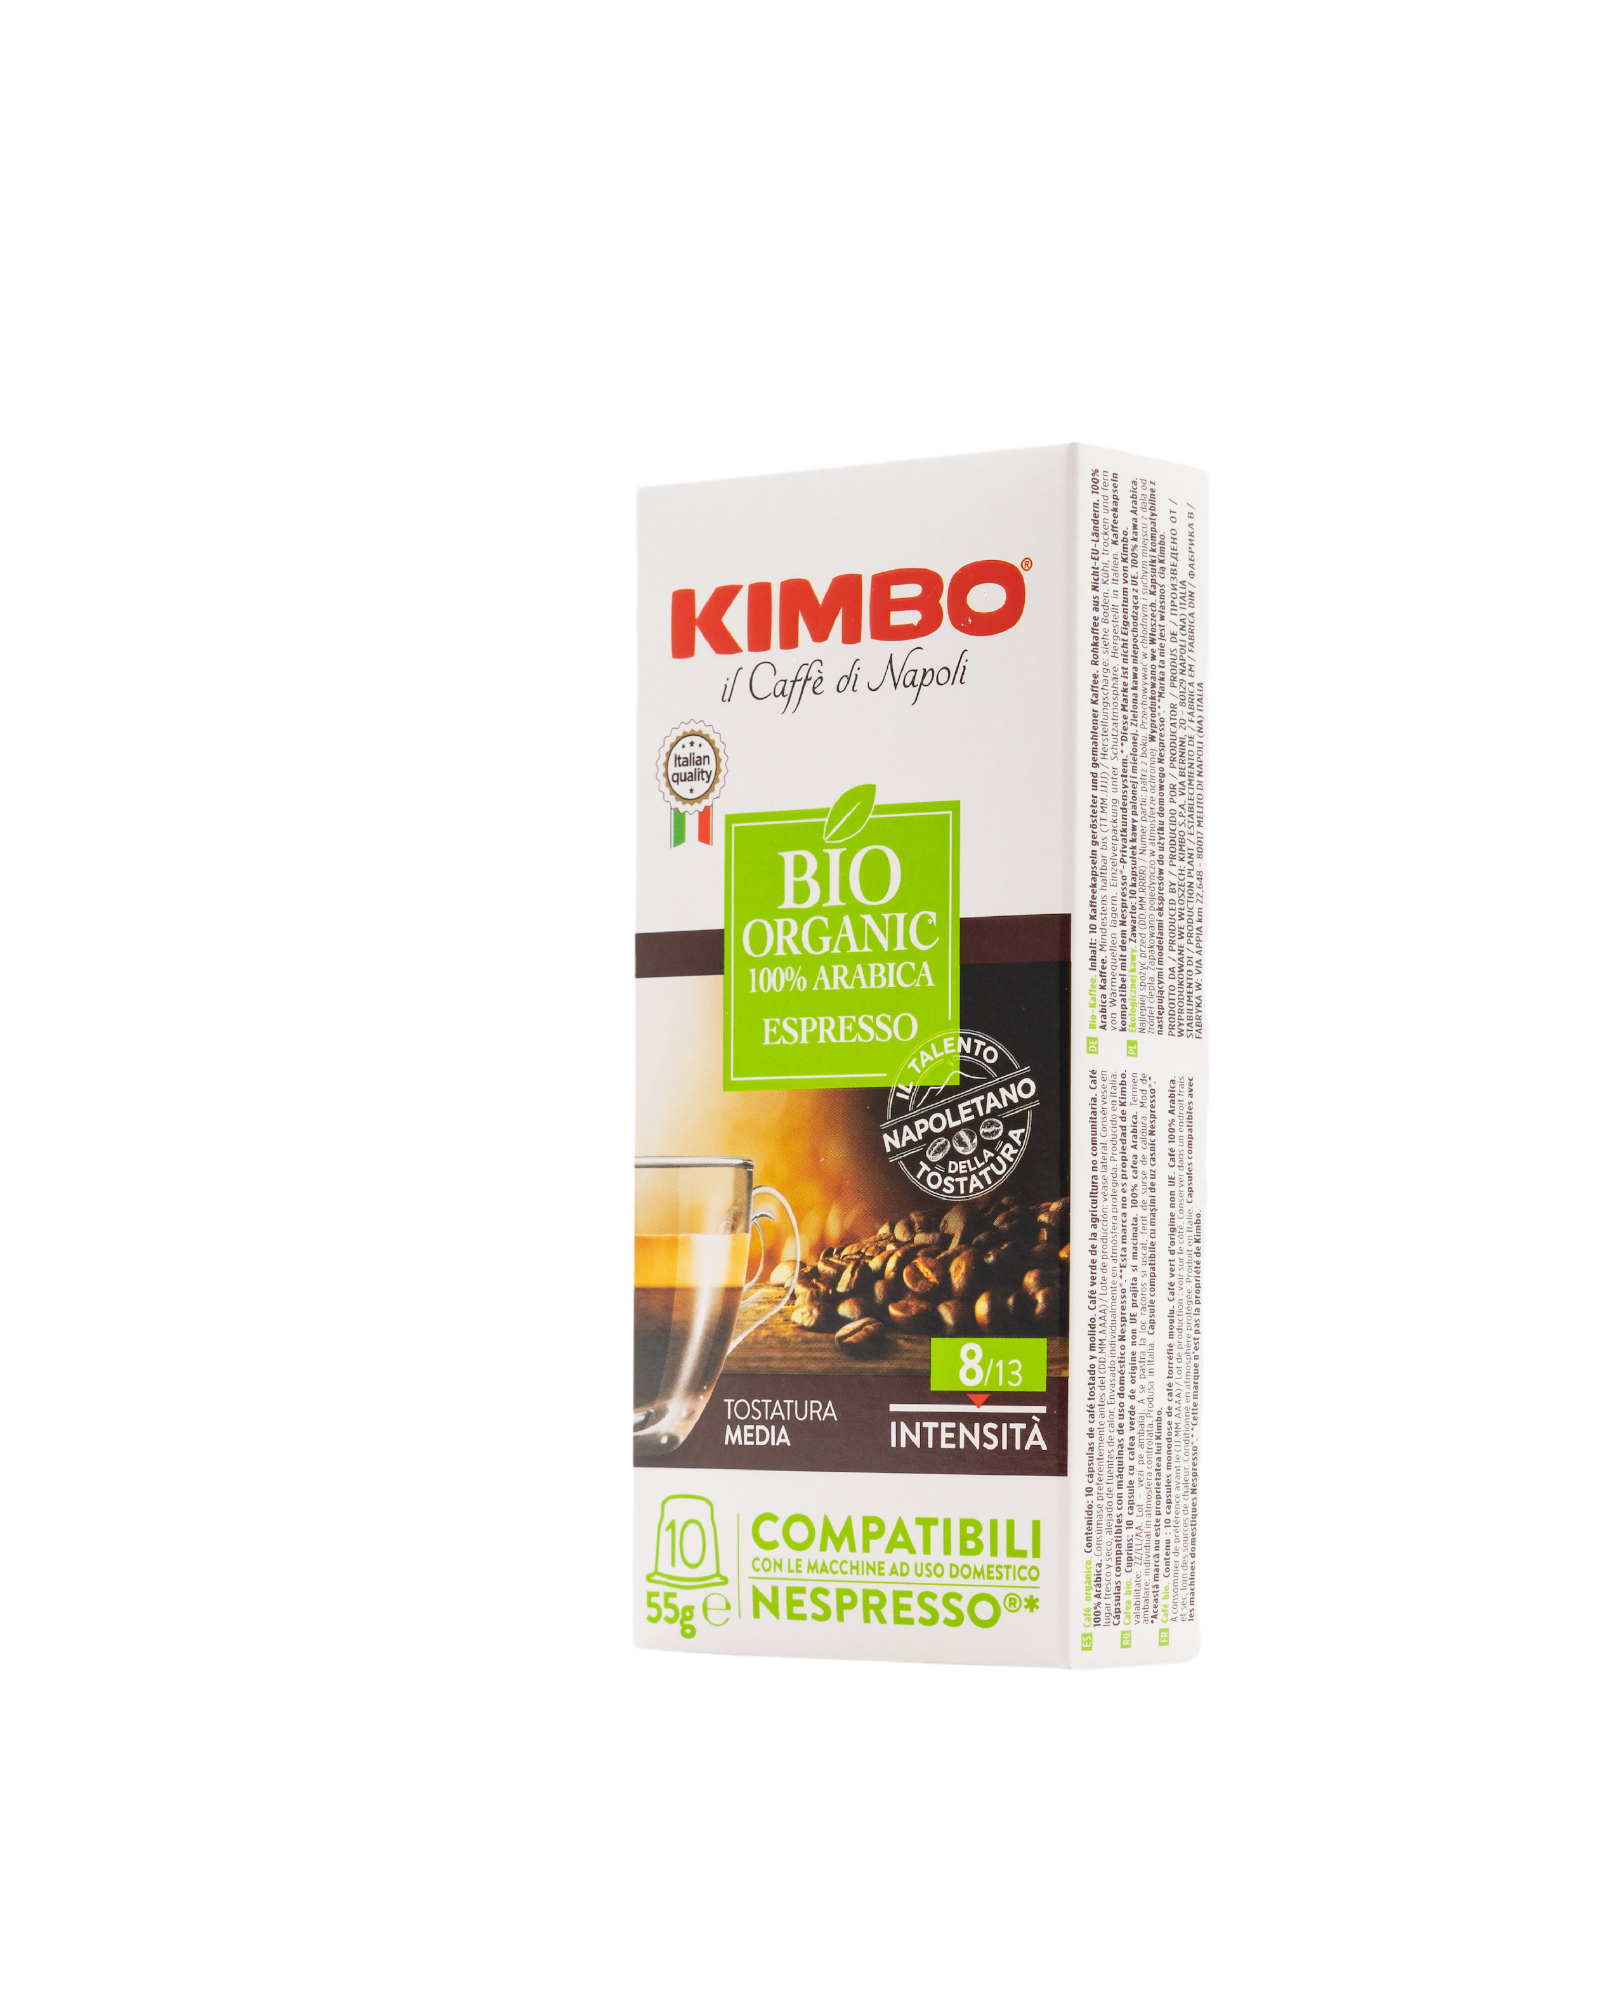 KIMBO - NC BIO Organic (10 capsules) - full case